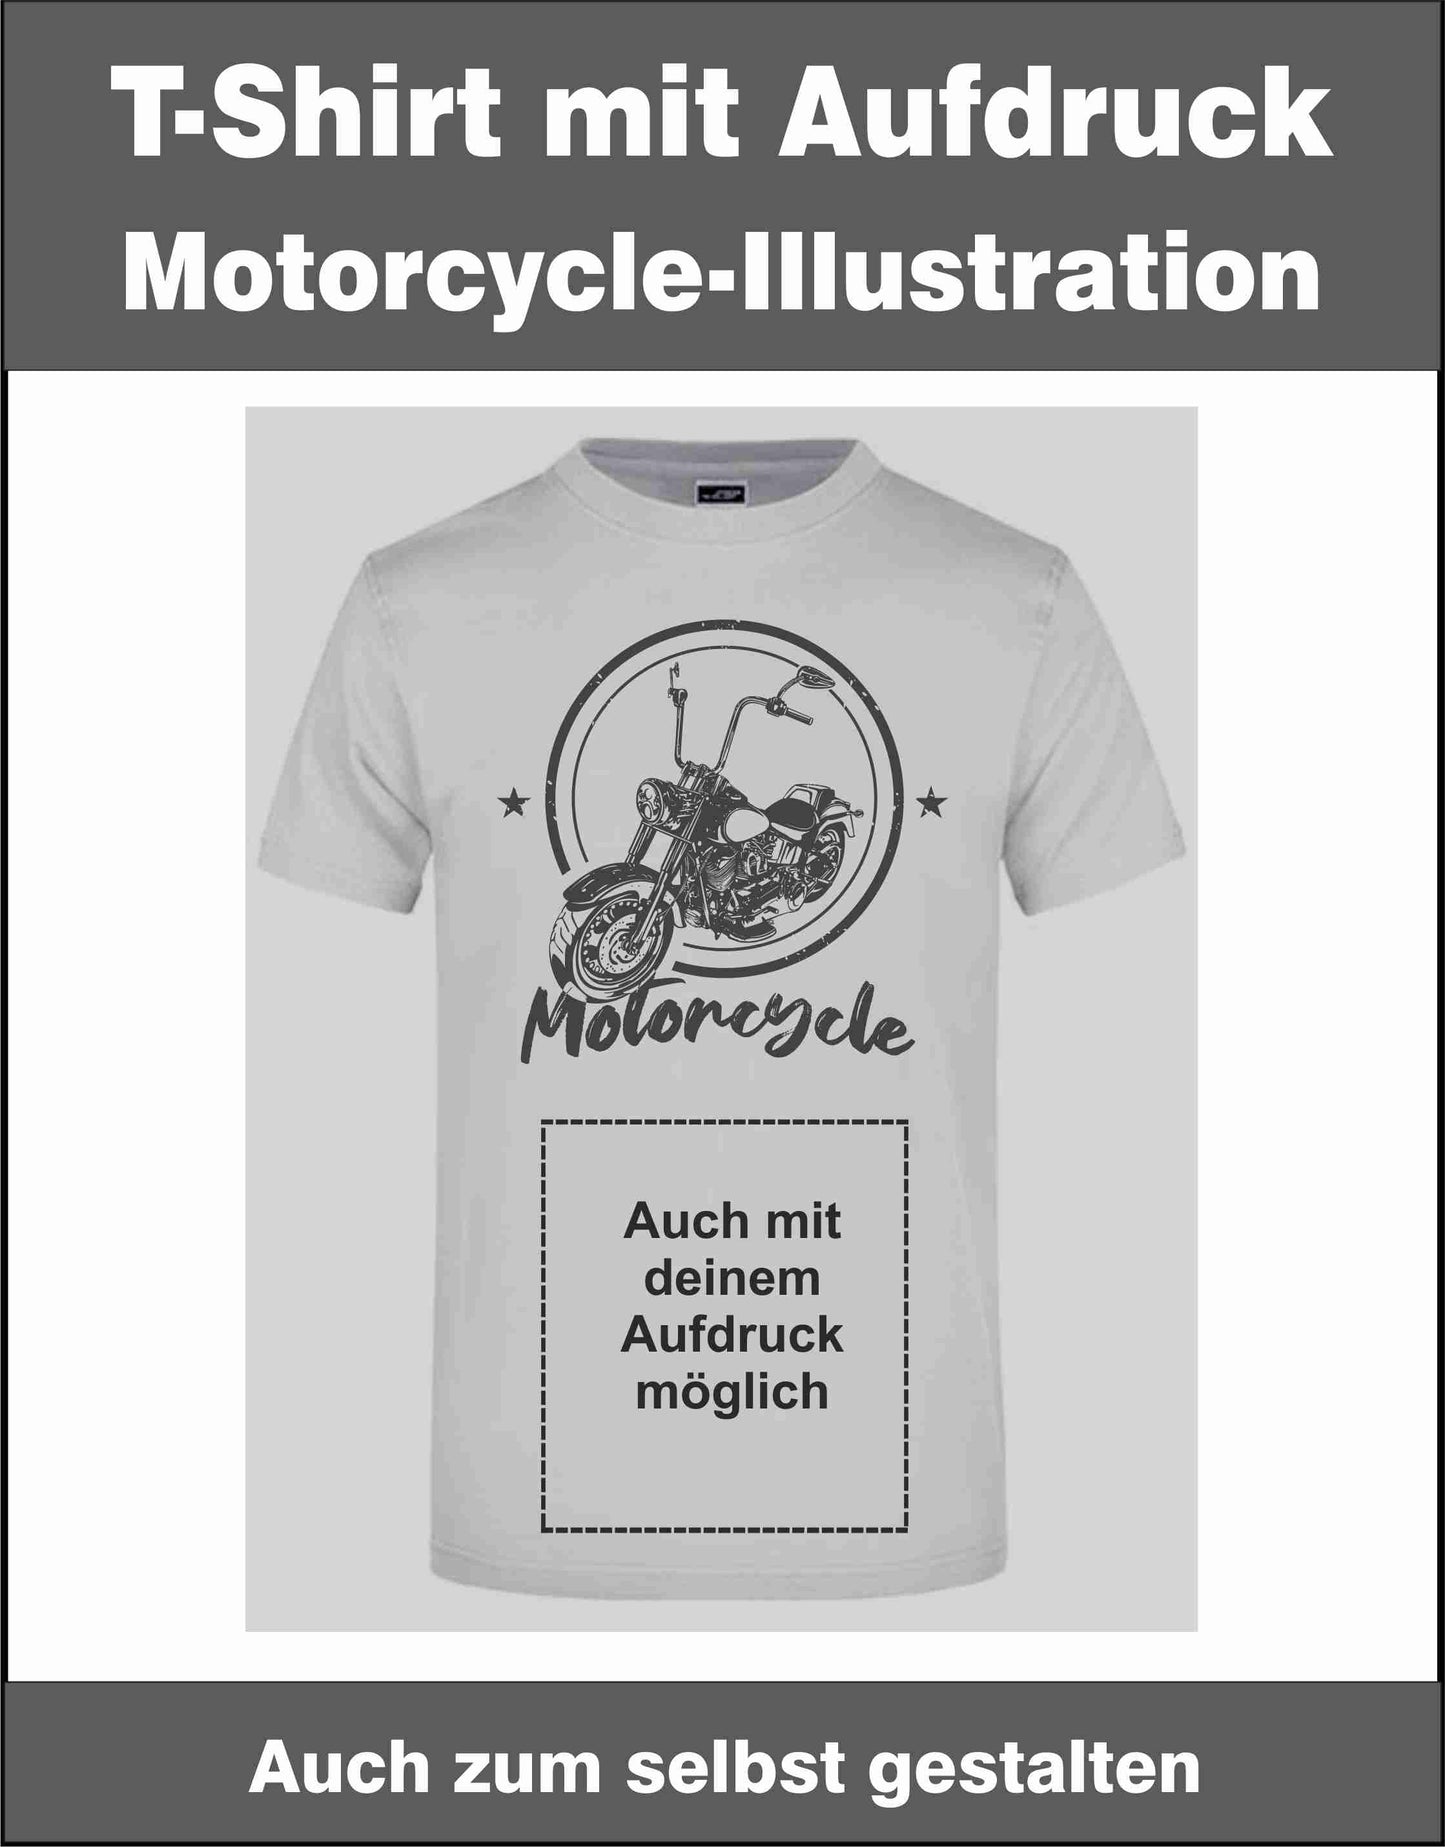 T-Shirt mit Aufdruck Motorrad Motorcycle-Illustration Vintage